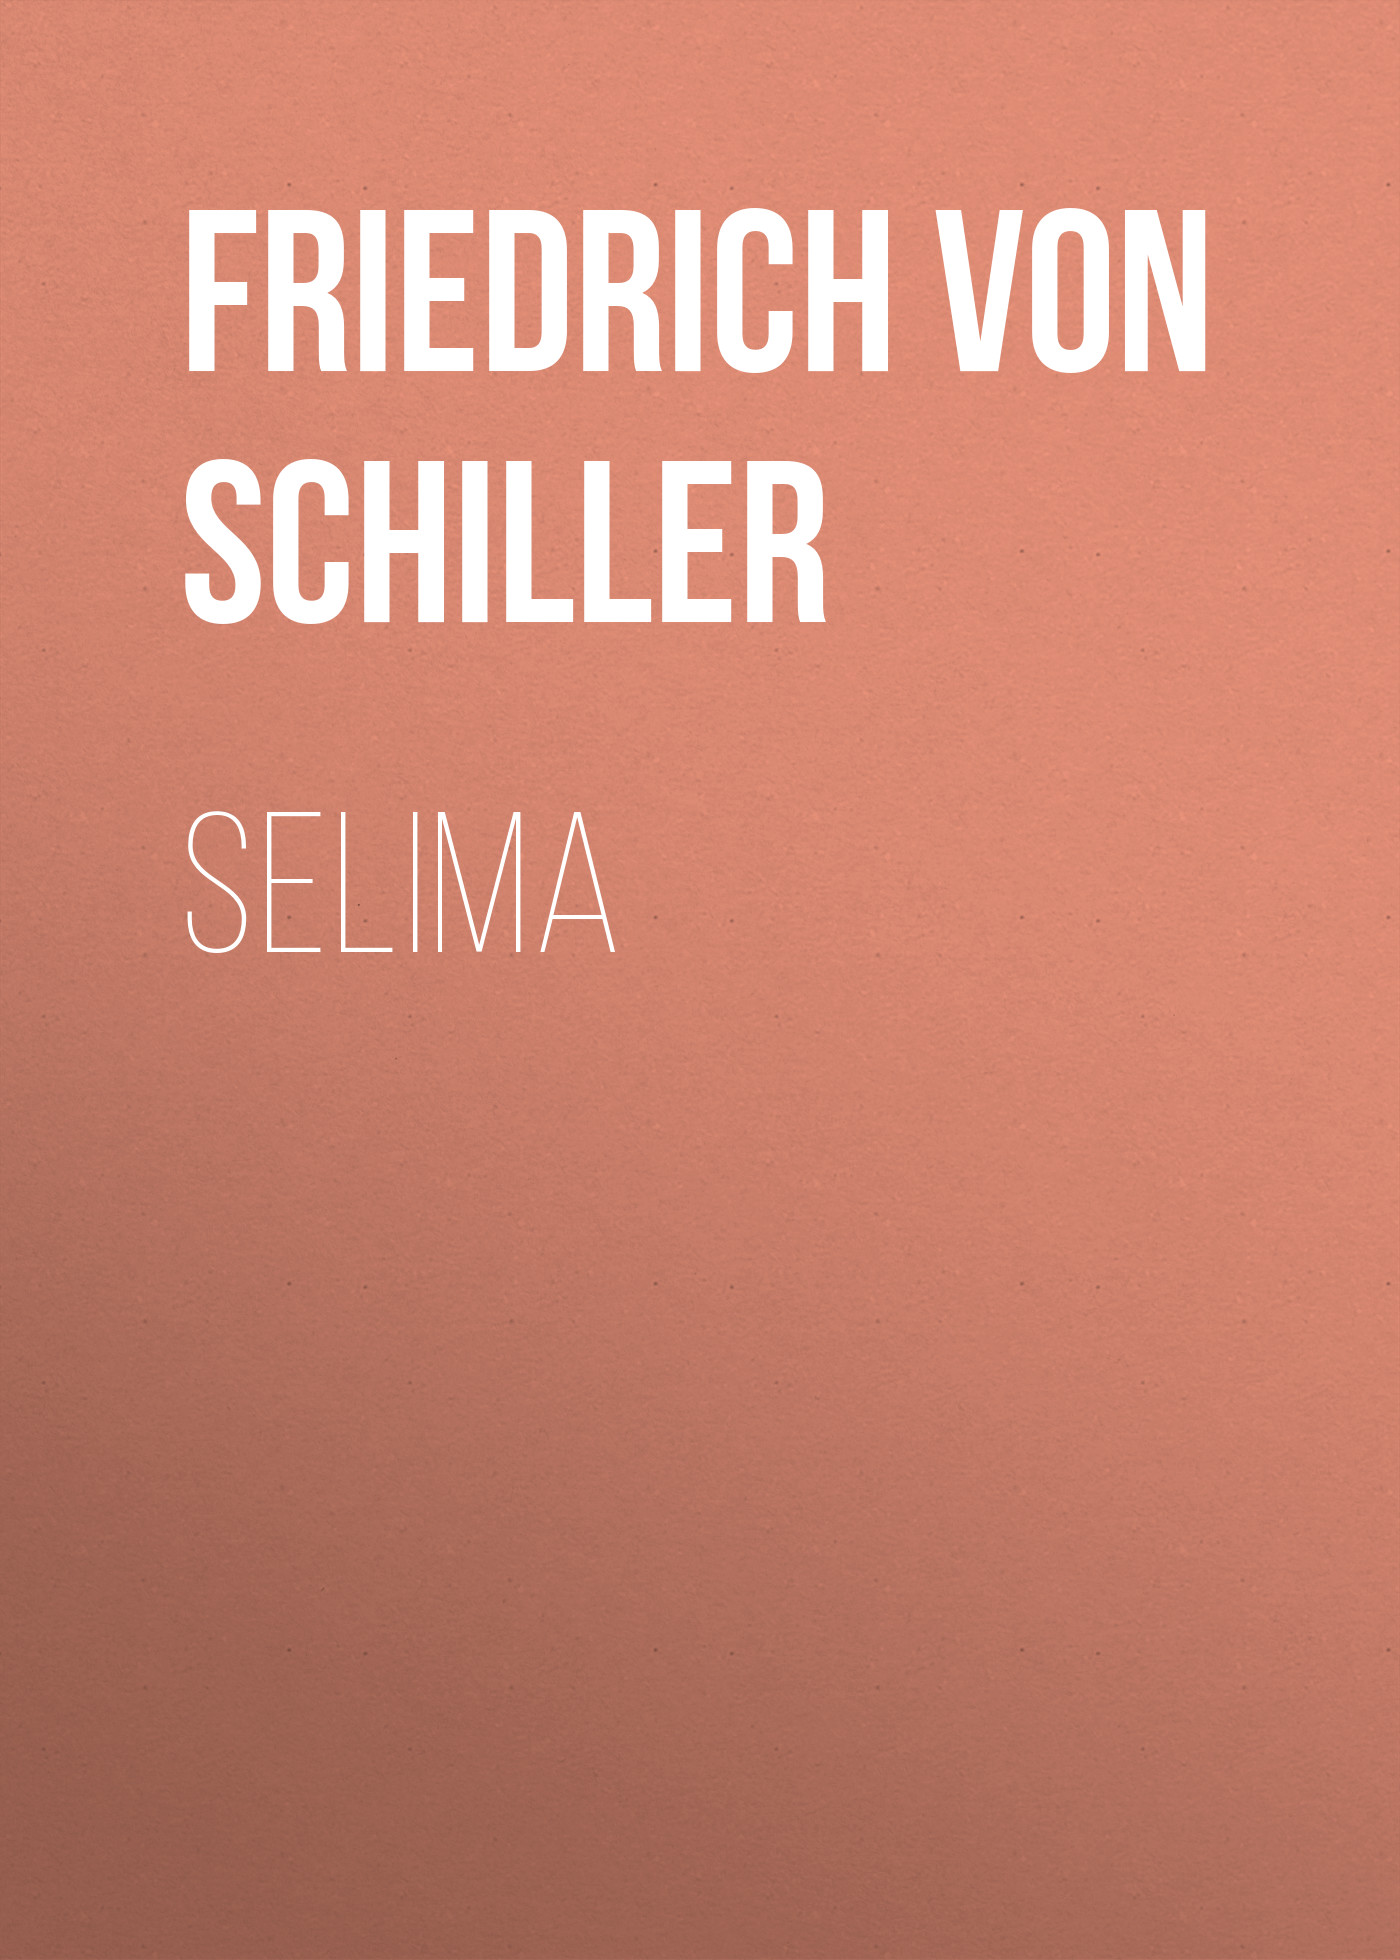 Книга Selima из серии , созданная Friedrich Schiller, может относится к жанру Литература 18 века, Зарубежная старинная литература, Зарубежная классика. Стоимость электронной книги Selima с идентификатором 25450044 составляет 0 руб.